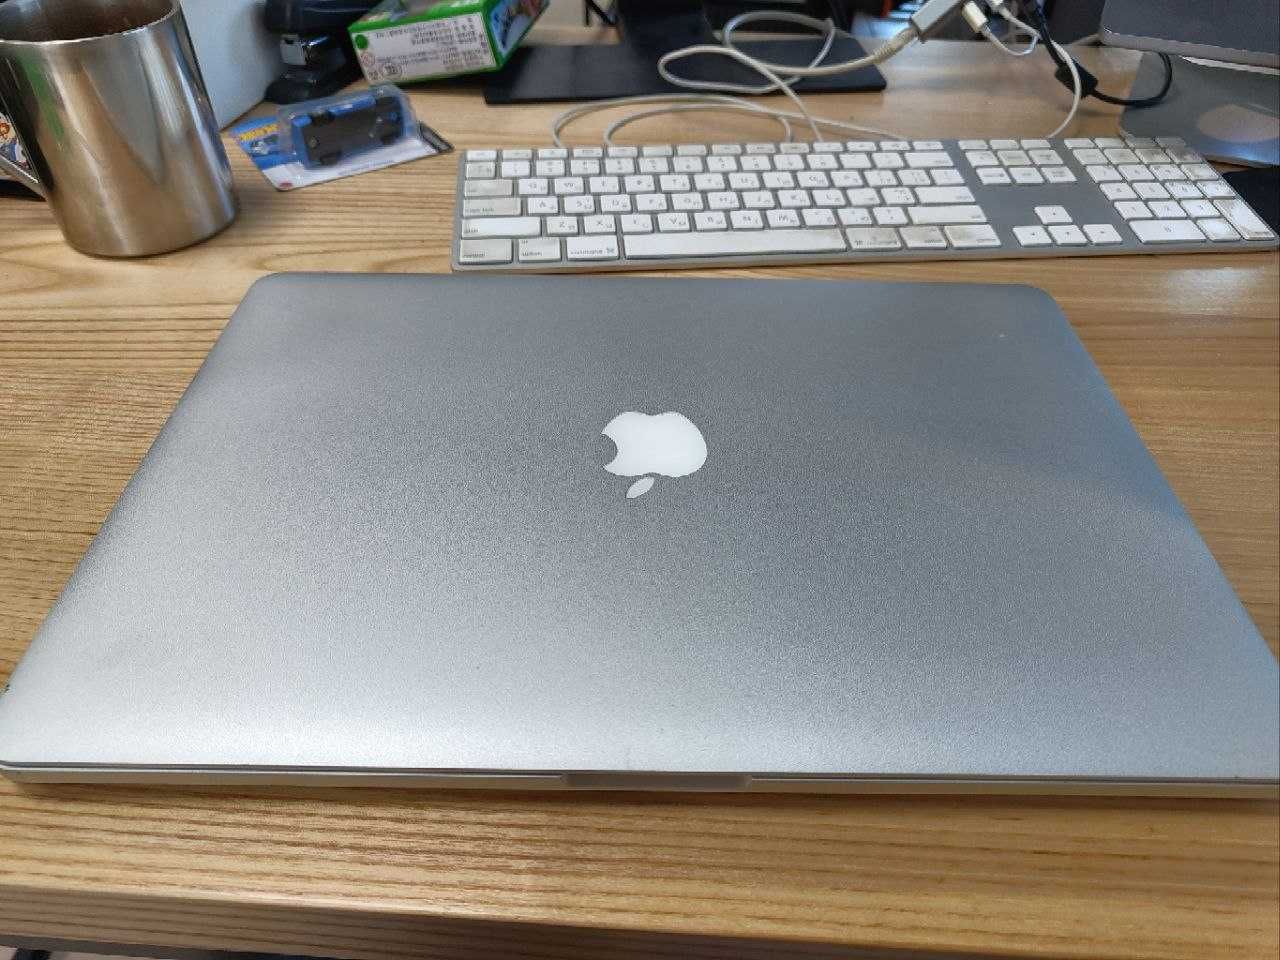 Macbook Pro 15-inch, Mid 2014, i7, 16Gb, 512 Gb, GT 750M